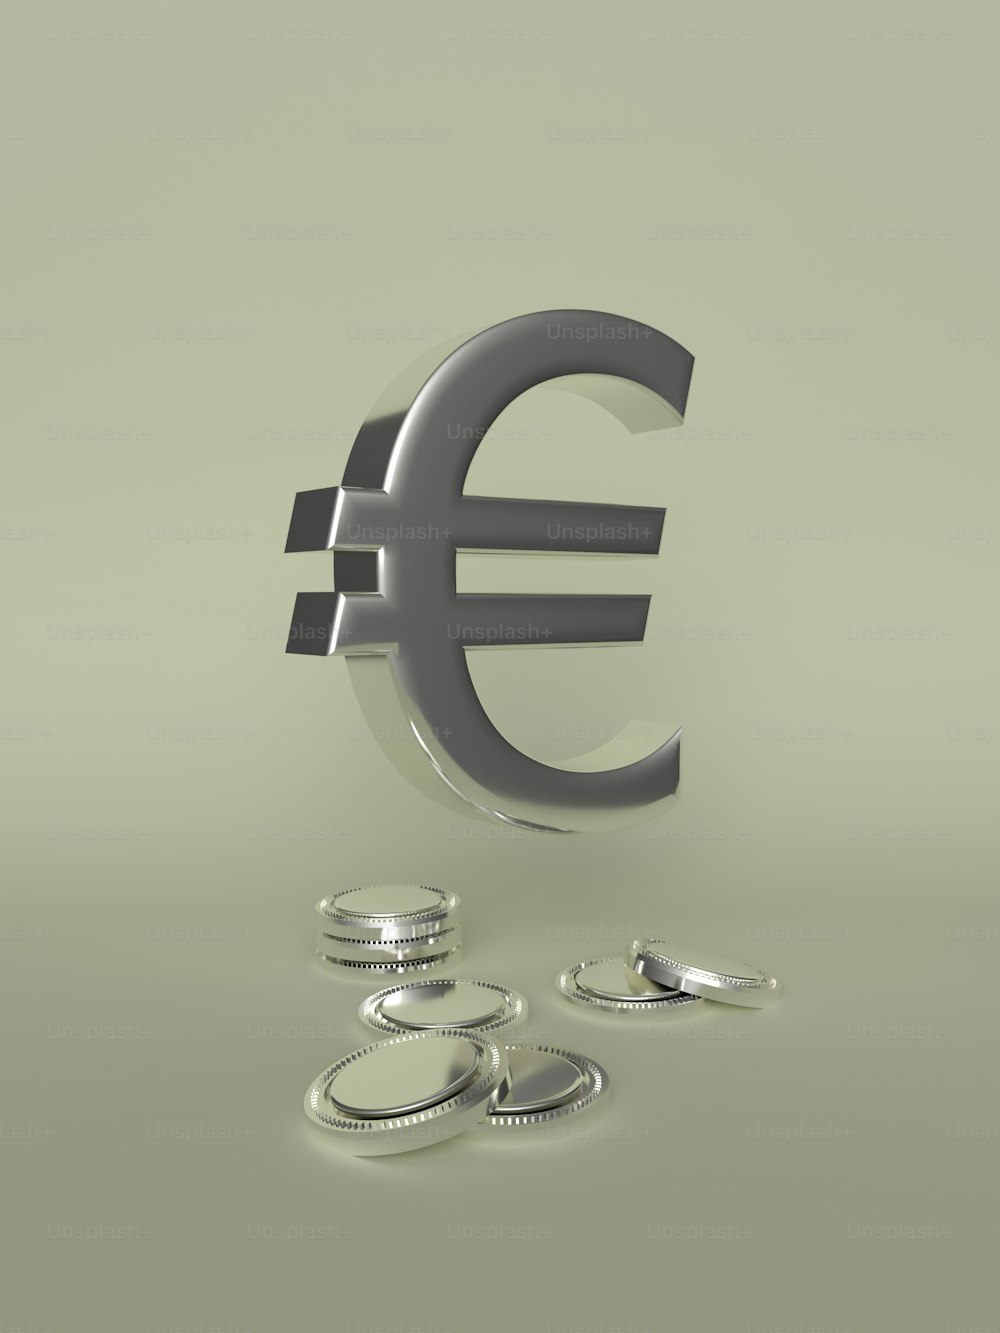 un signe euro en métal avec quelques pièces de monnaie autour